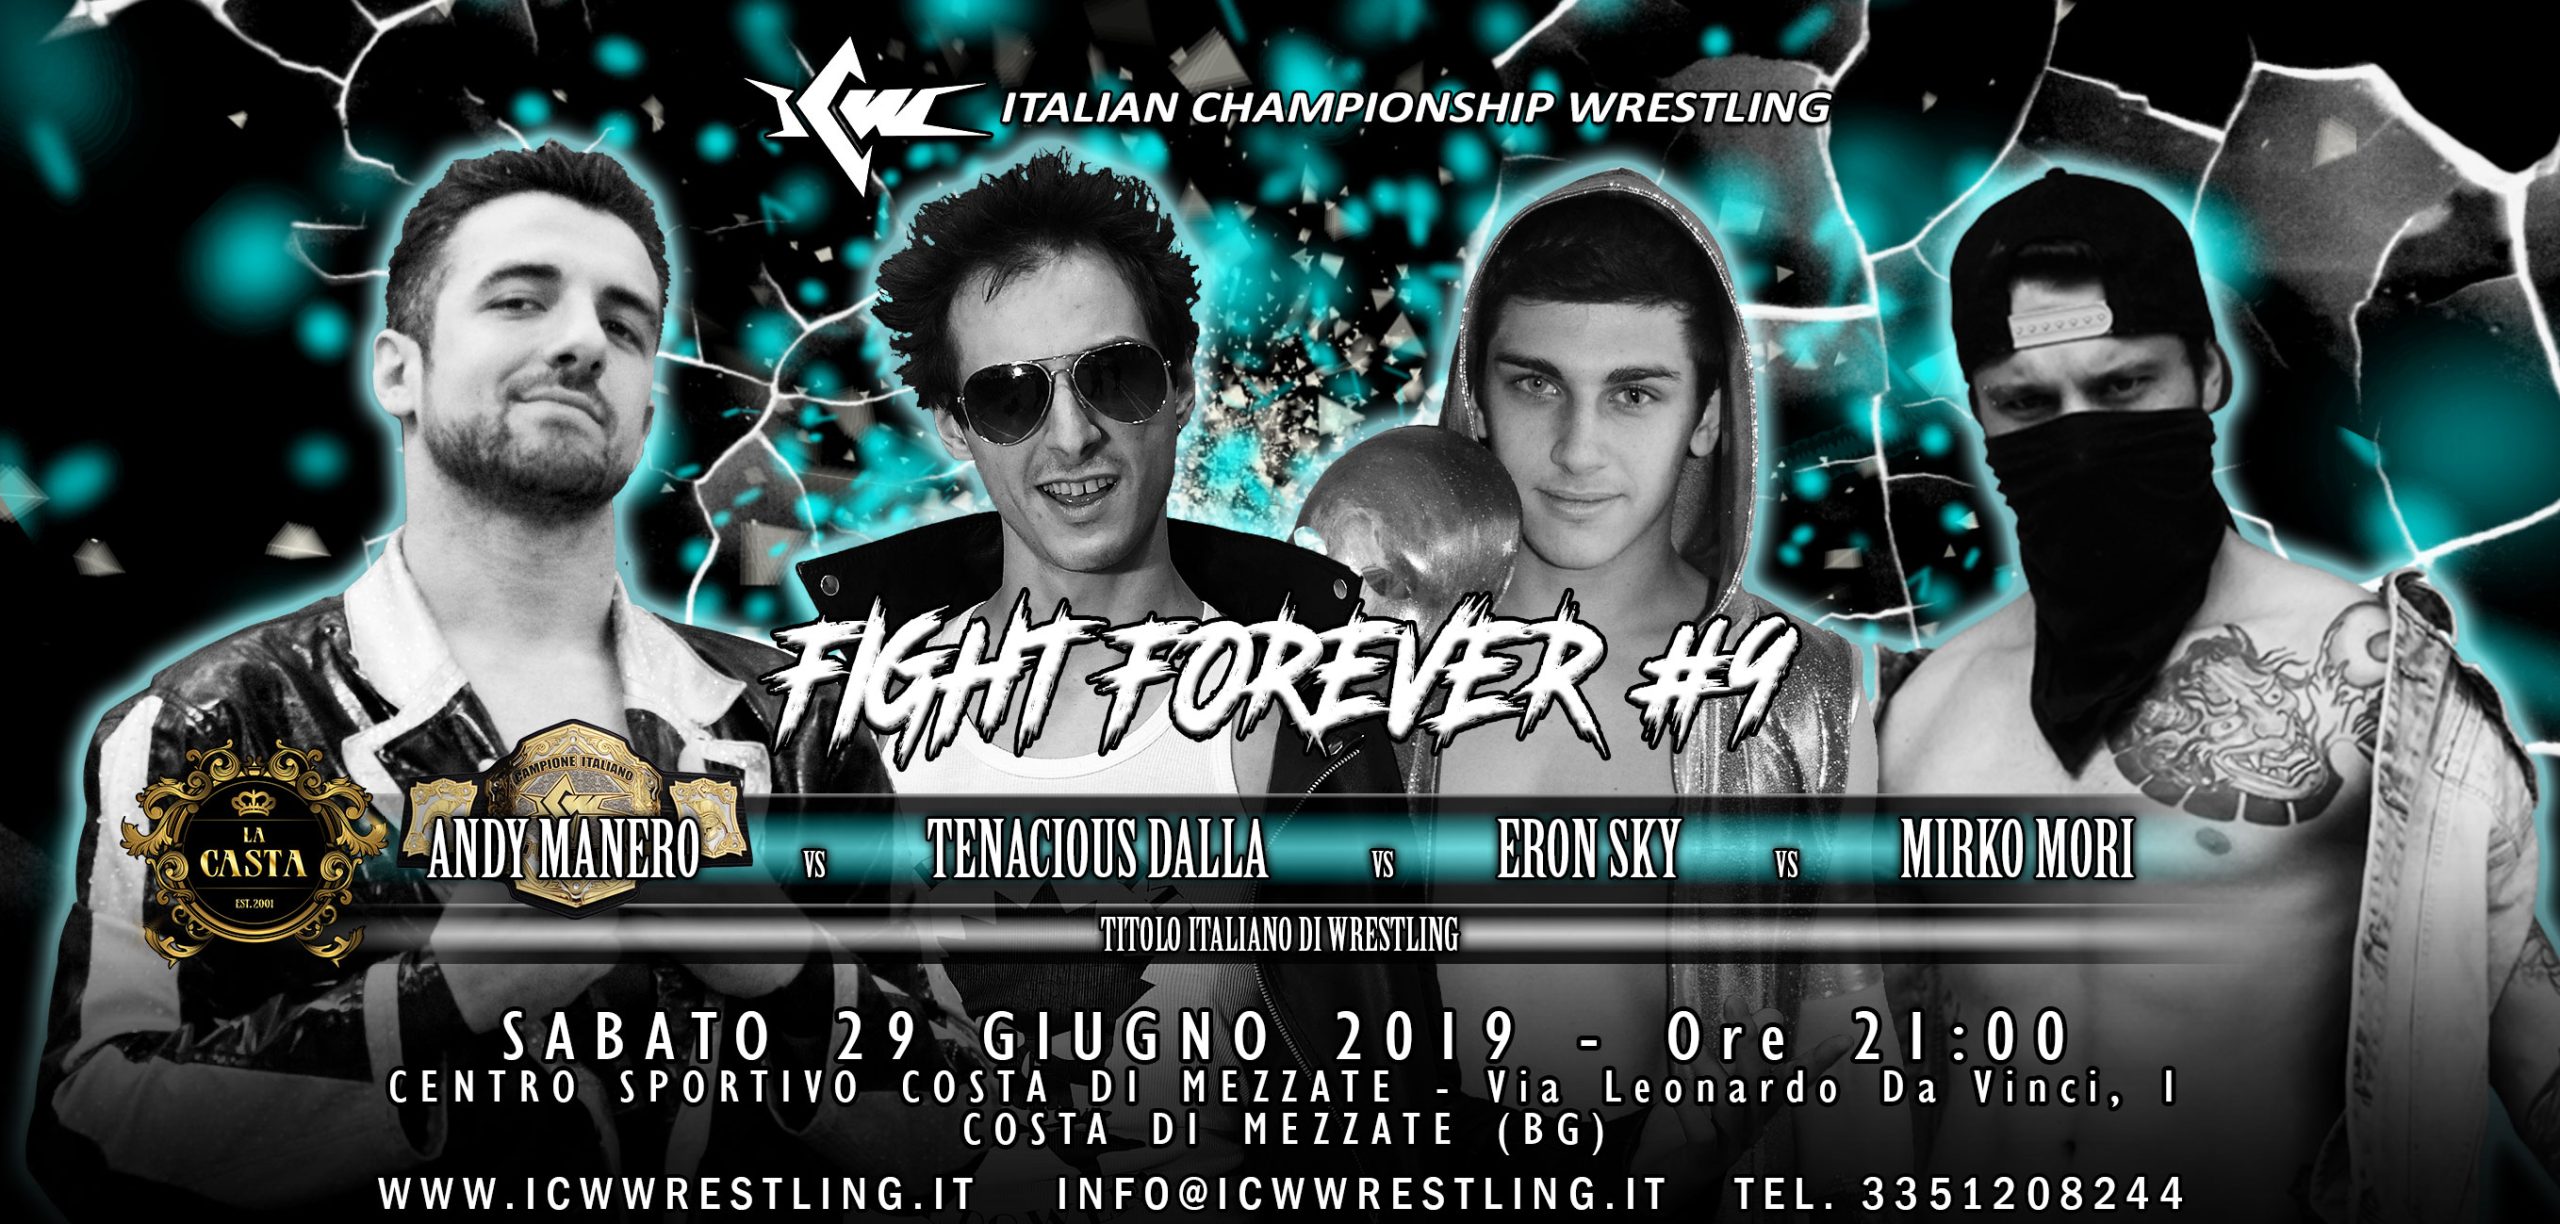 Titolo Italiano di Wrestling in palio in un Fatal Four Way a ICW Fight Forever #9!